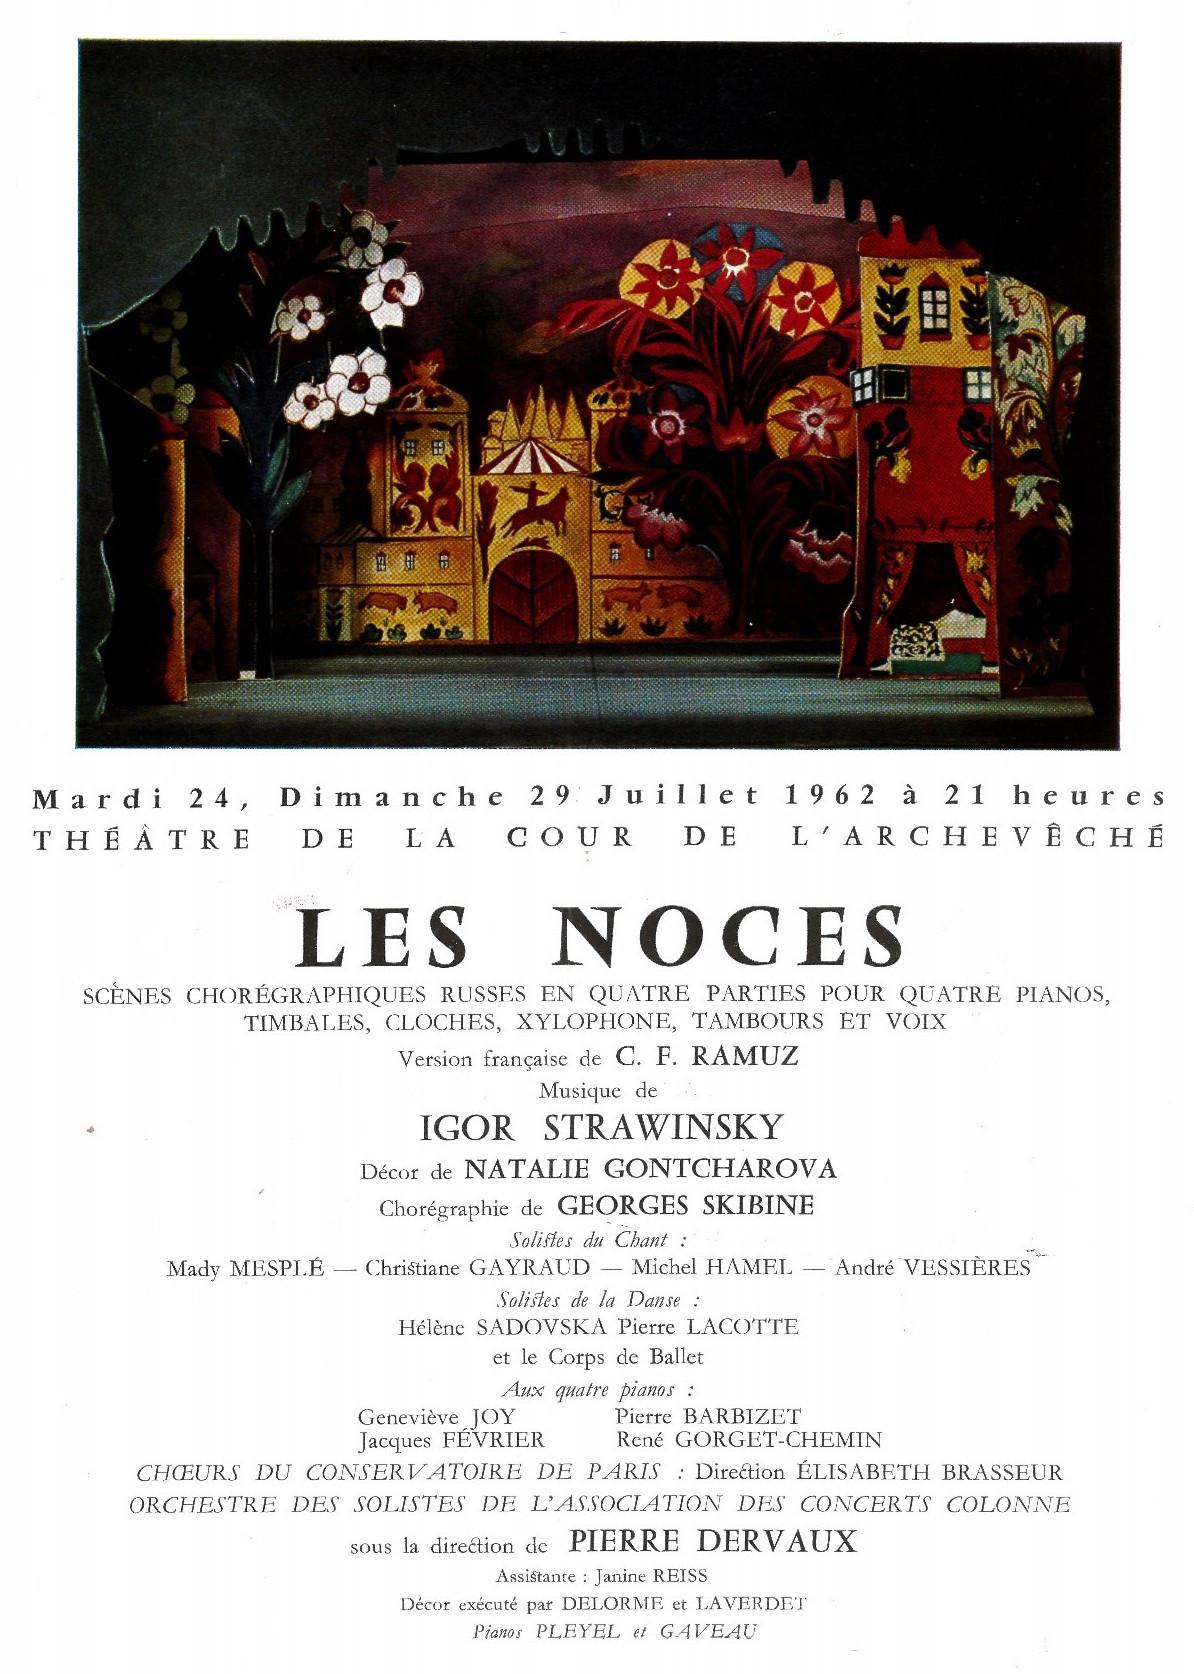 Detail from the 1962 programme announcing performances of Les Noces at the Théâtre de l’Archevêché